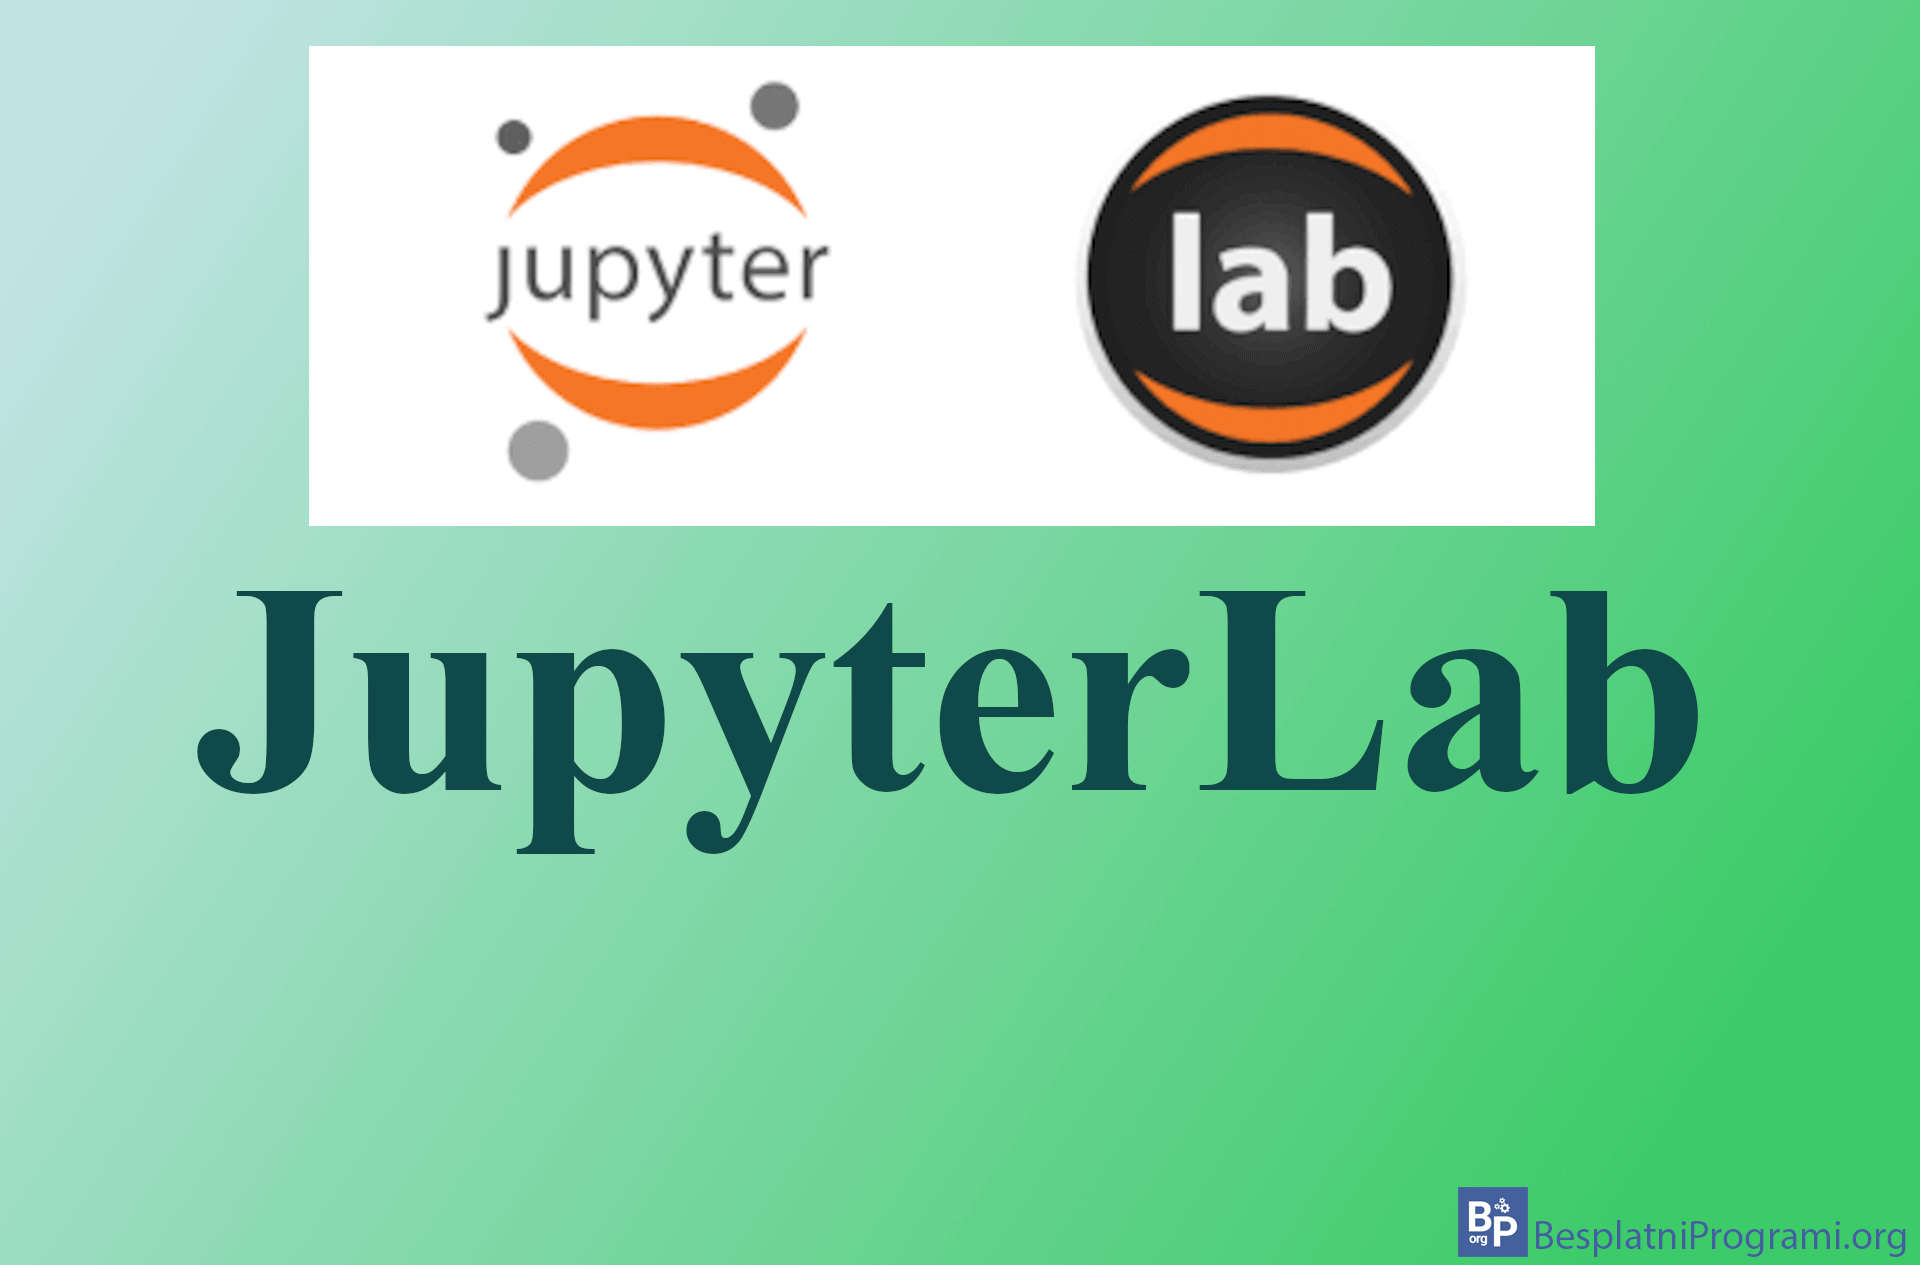 Jupyterlab